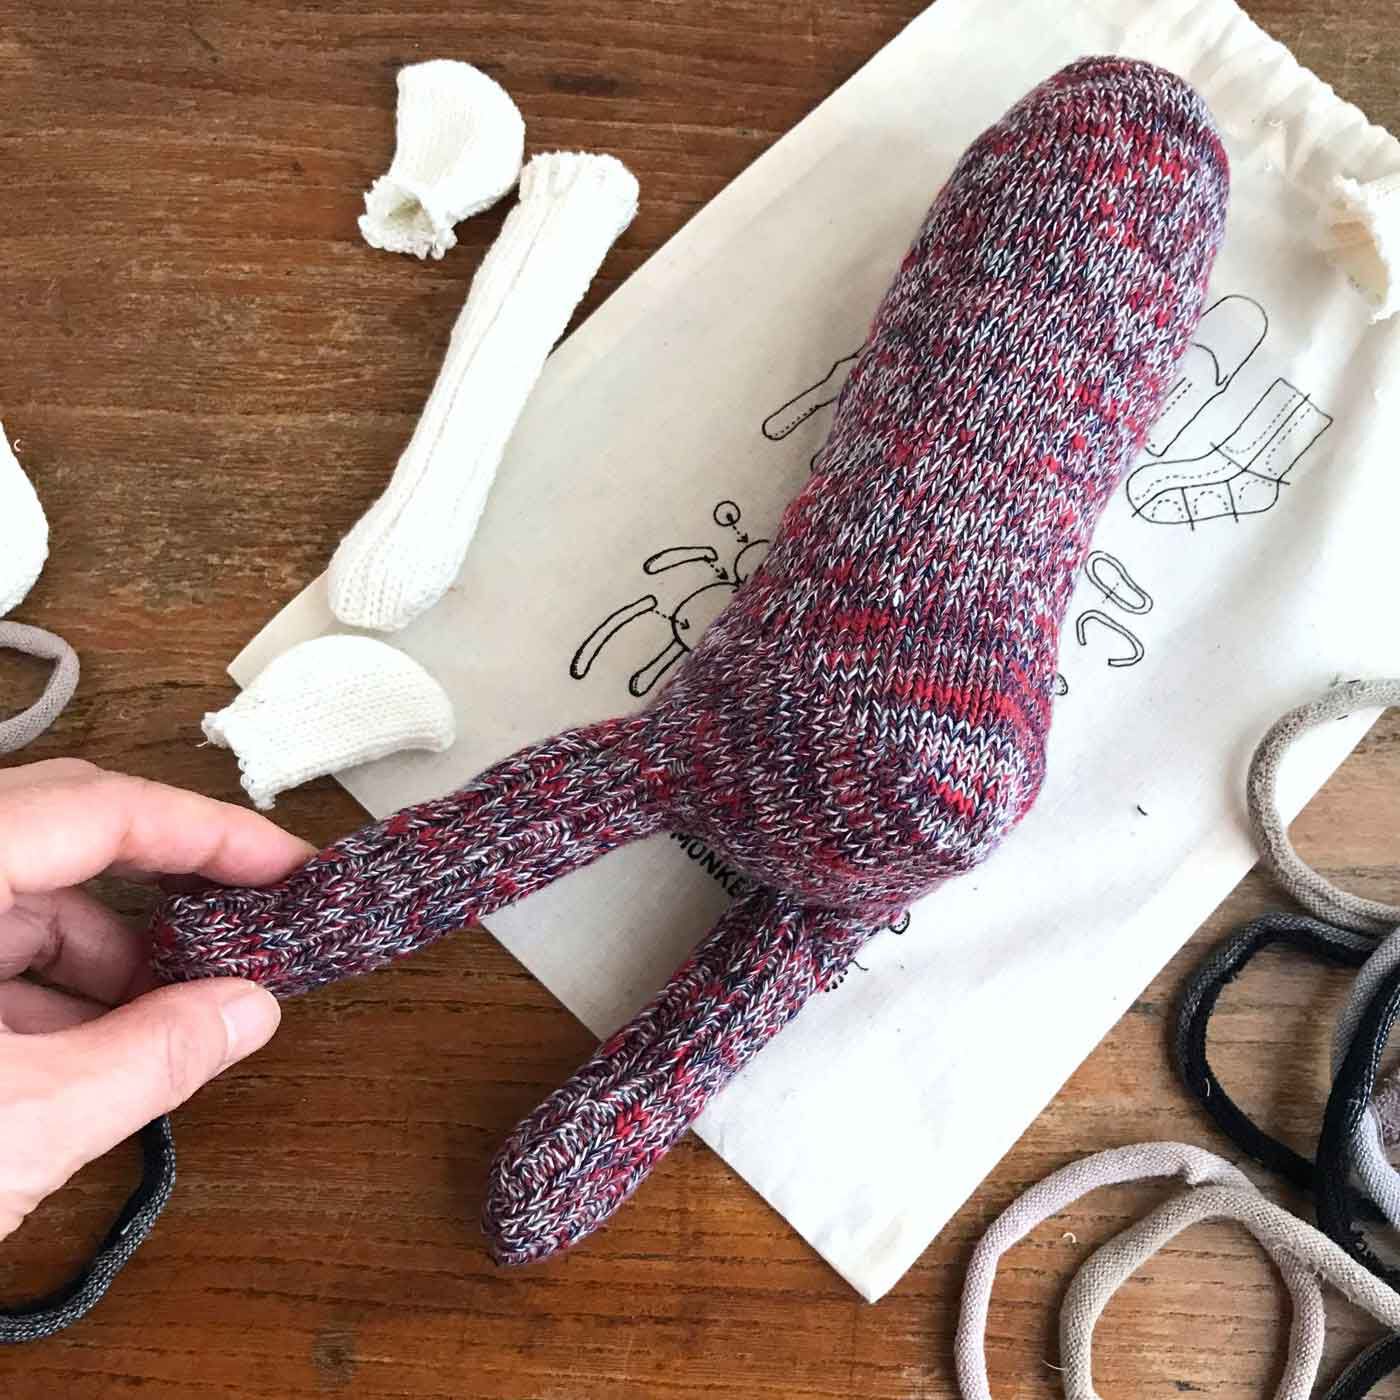 フェリシモの雑貨Kraso|残糸で編んだ靴下と端材で作るおさるのぬいぐるみキット〈巾着付き〉|フーズノート店主作。ちょっと詰め物が多すぎたかな。まぁいいや！フィーリングで作るのだ。